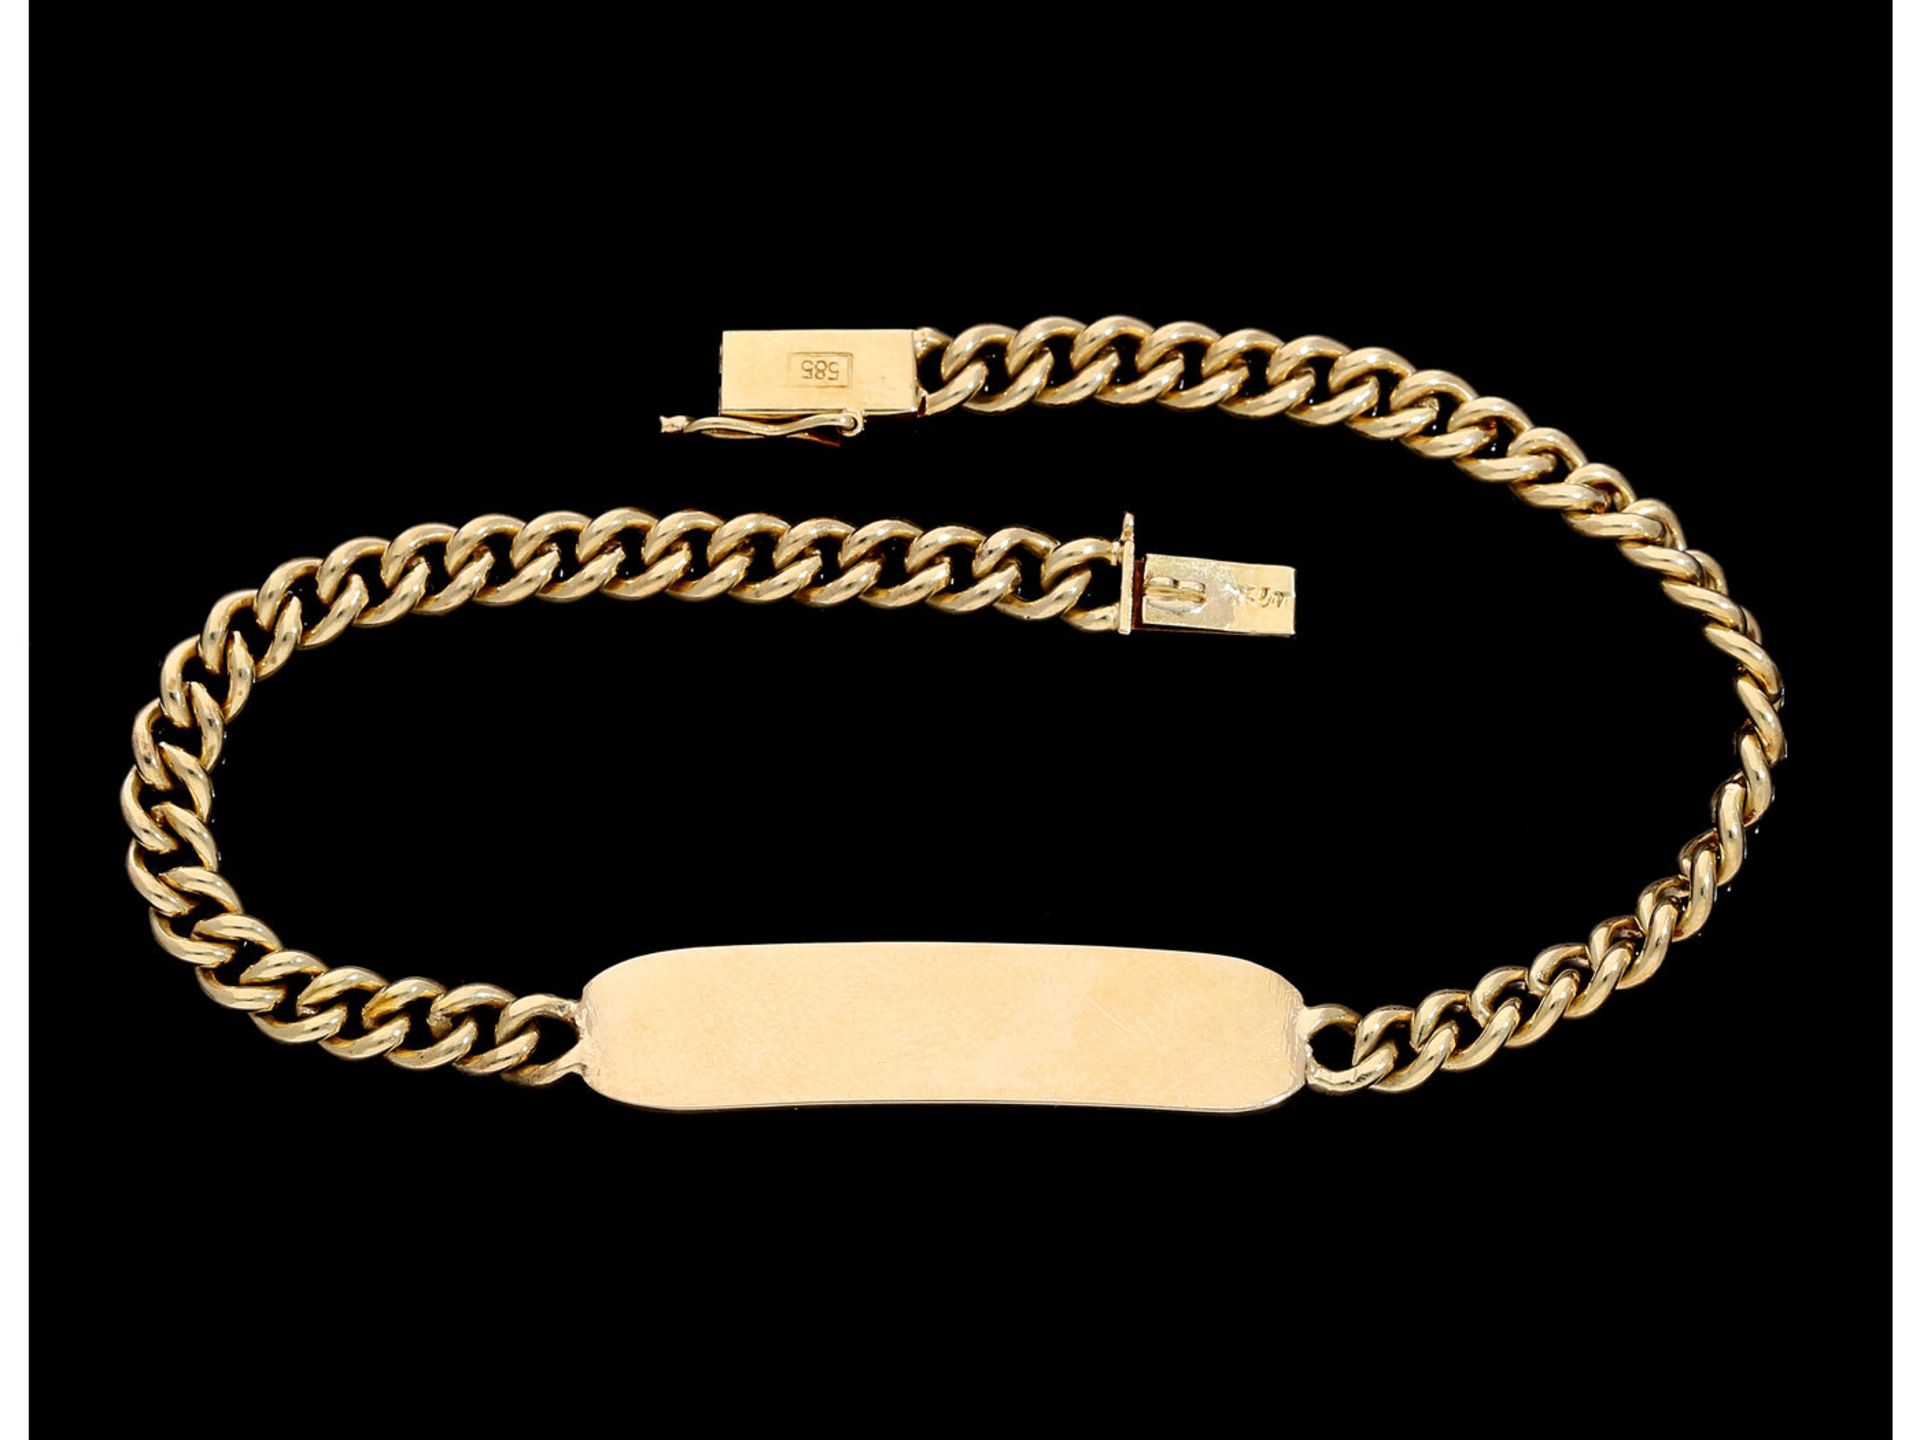 Armband: goldenes Panzerarmband mit Namensschild, ungraviert und ungetragenCa. 19cm lang, ca. 12g,